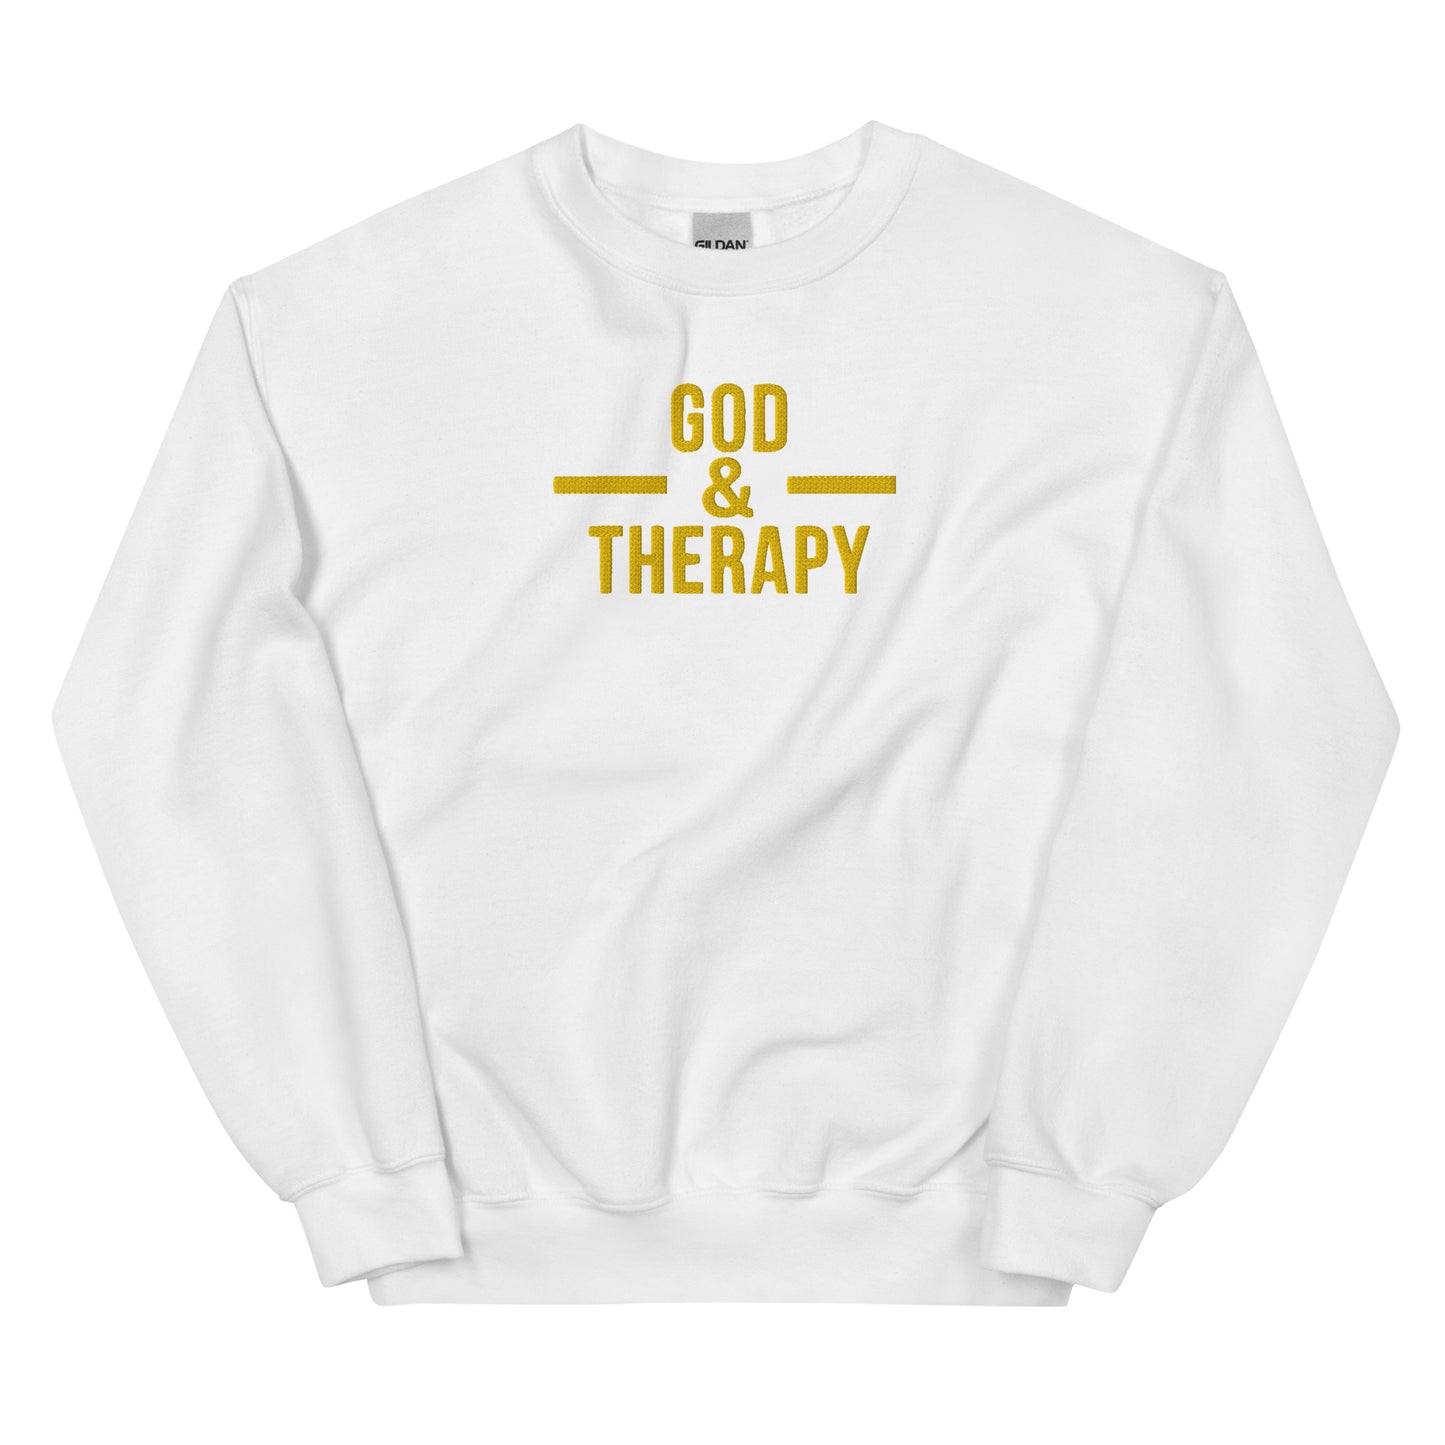 God & Therapy fleece sweatshirt